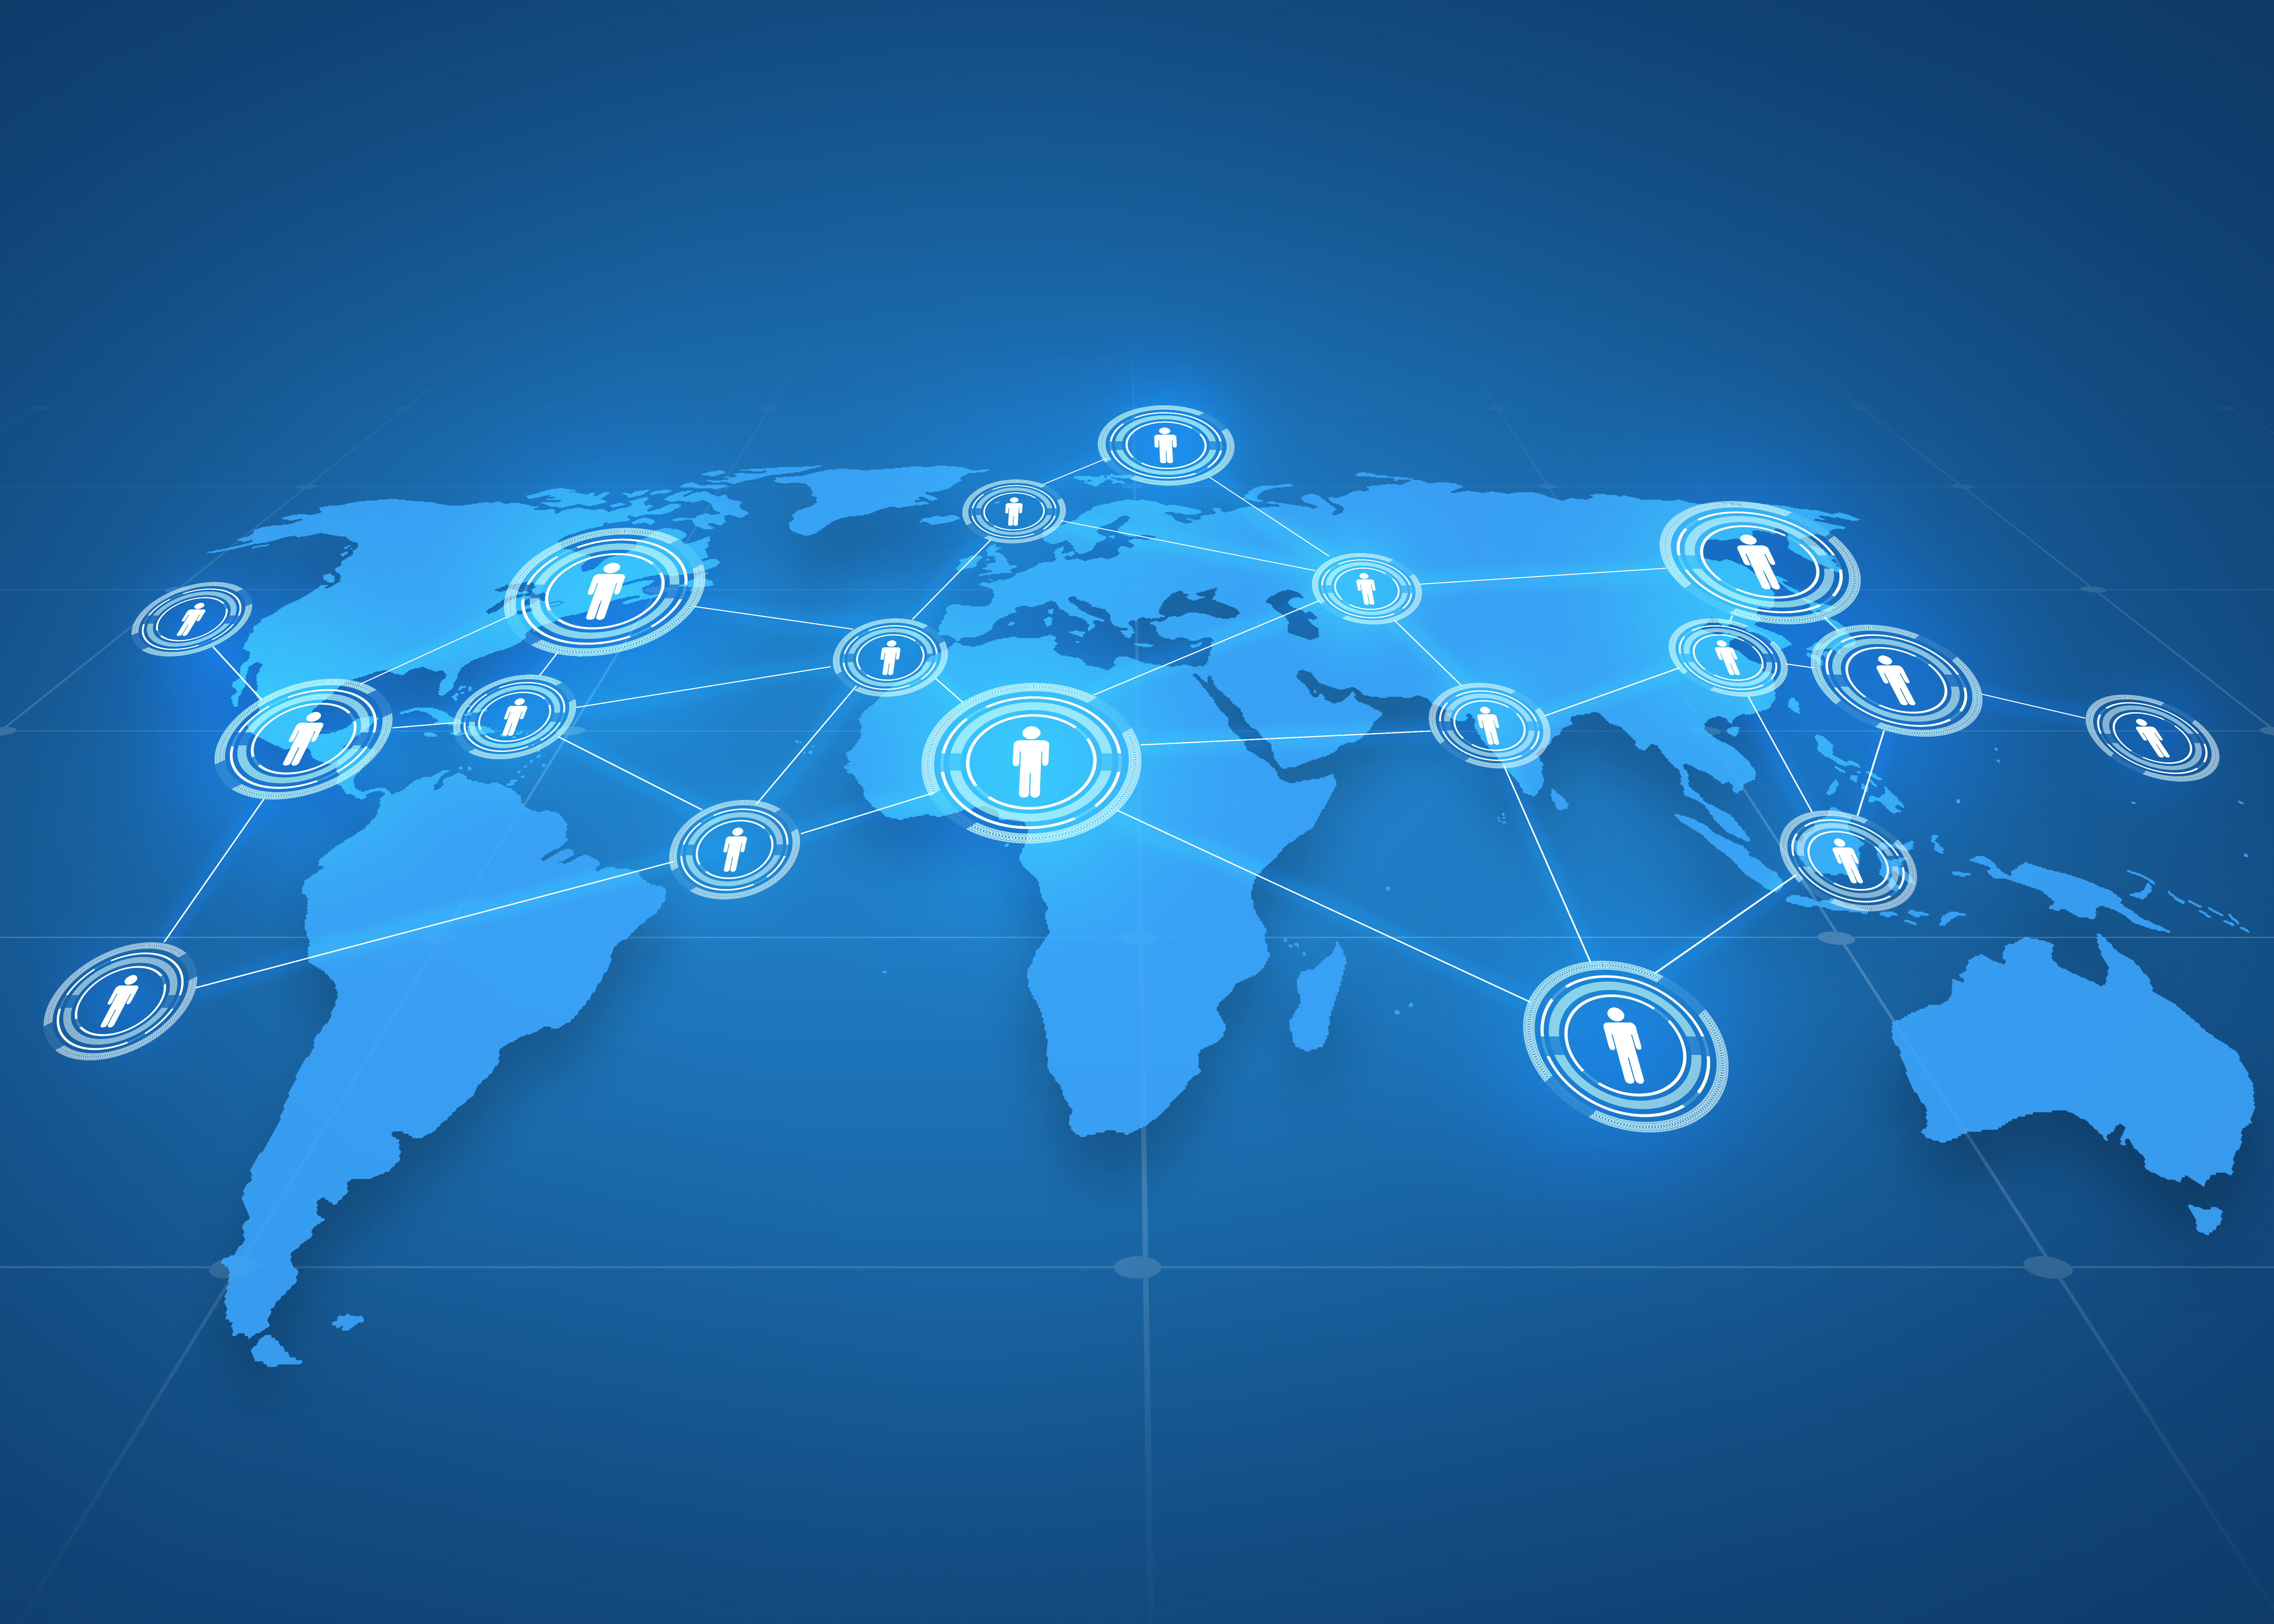 globaali liiketoiminta, sosiaalinen verkosto, joukkoviestintä ja teknologiakonsepti - maailmankartan projektio ihmisten kuvakkeilla sinisen taustan päällä